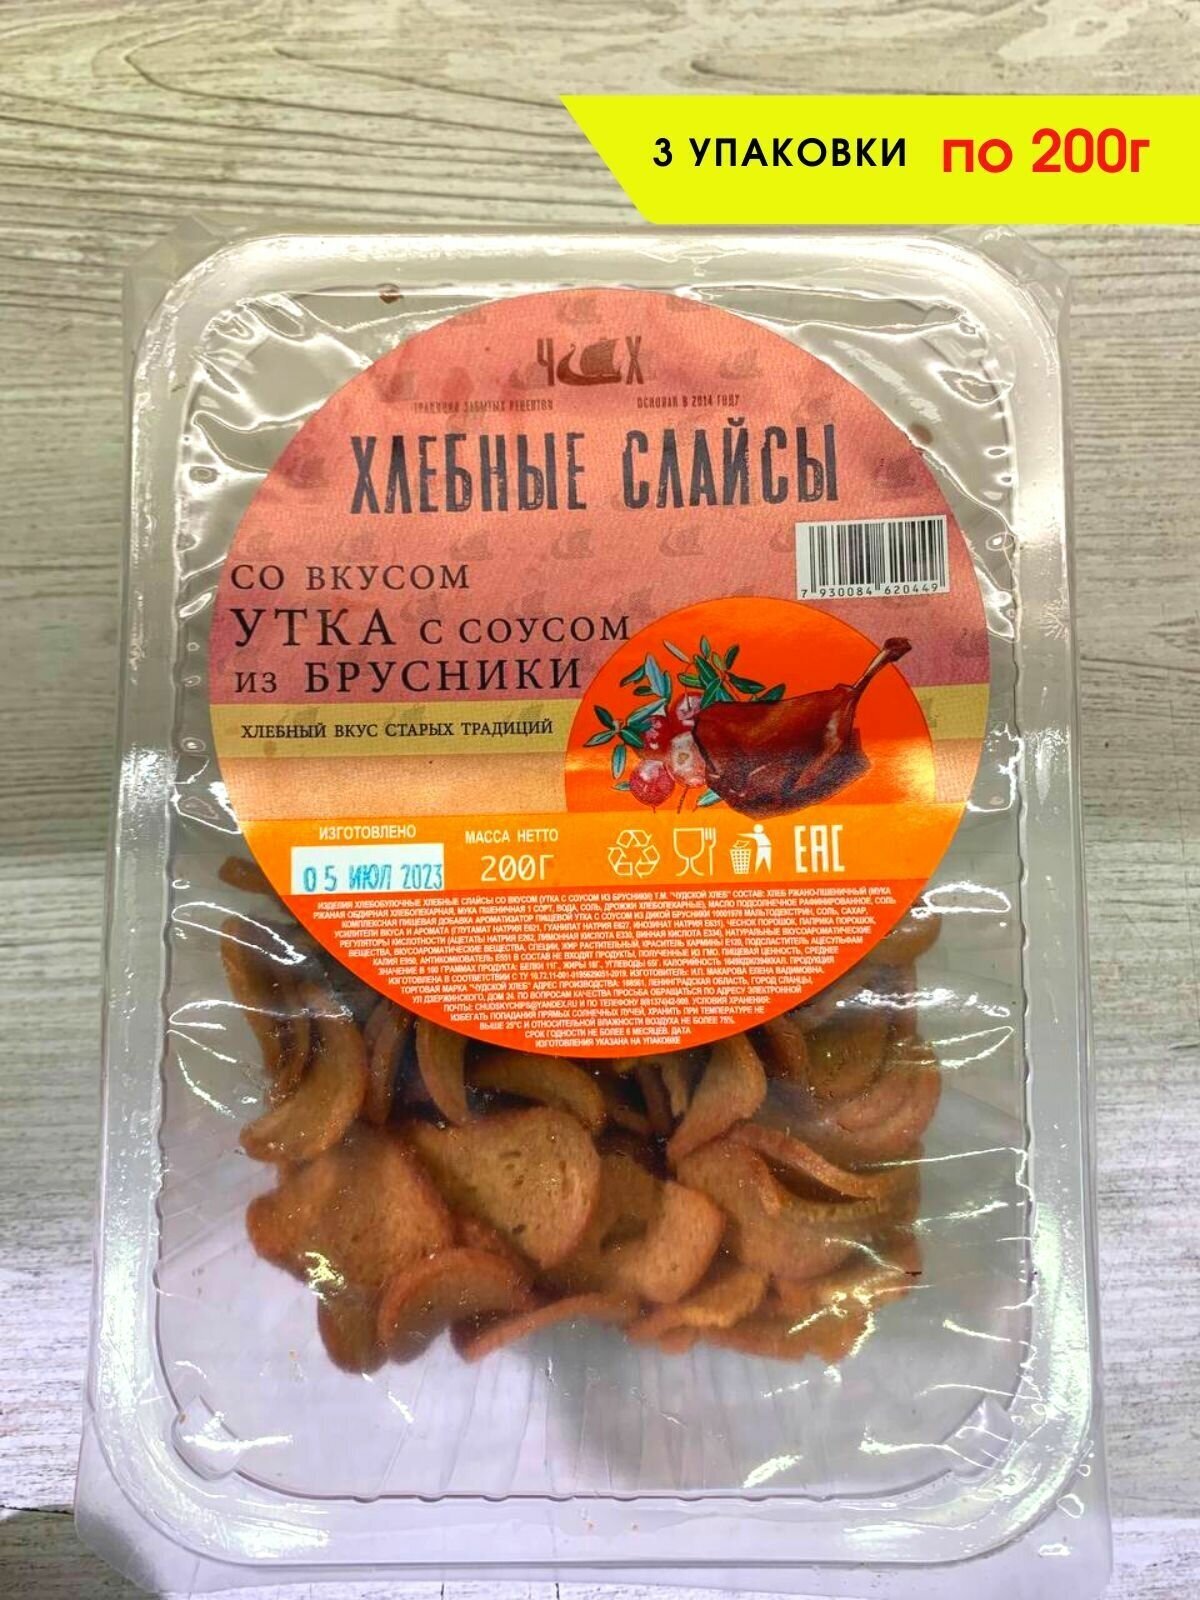 Сухари Хлебные слайсы вкус "Утка с соусом из брусники", 3 шт. по 200 г